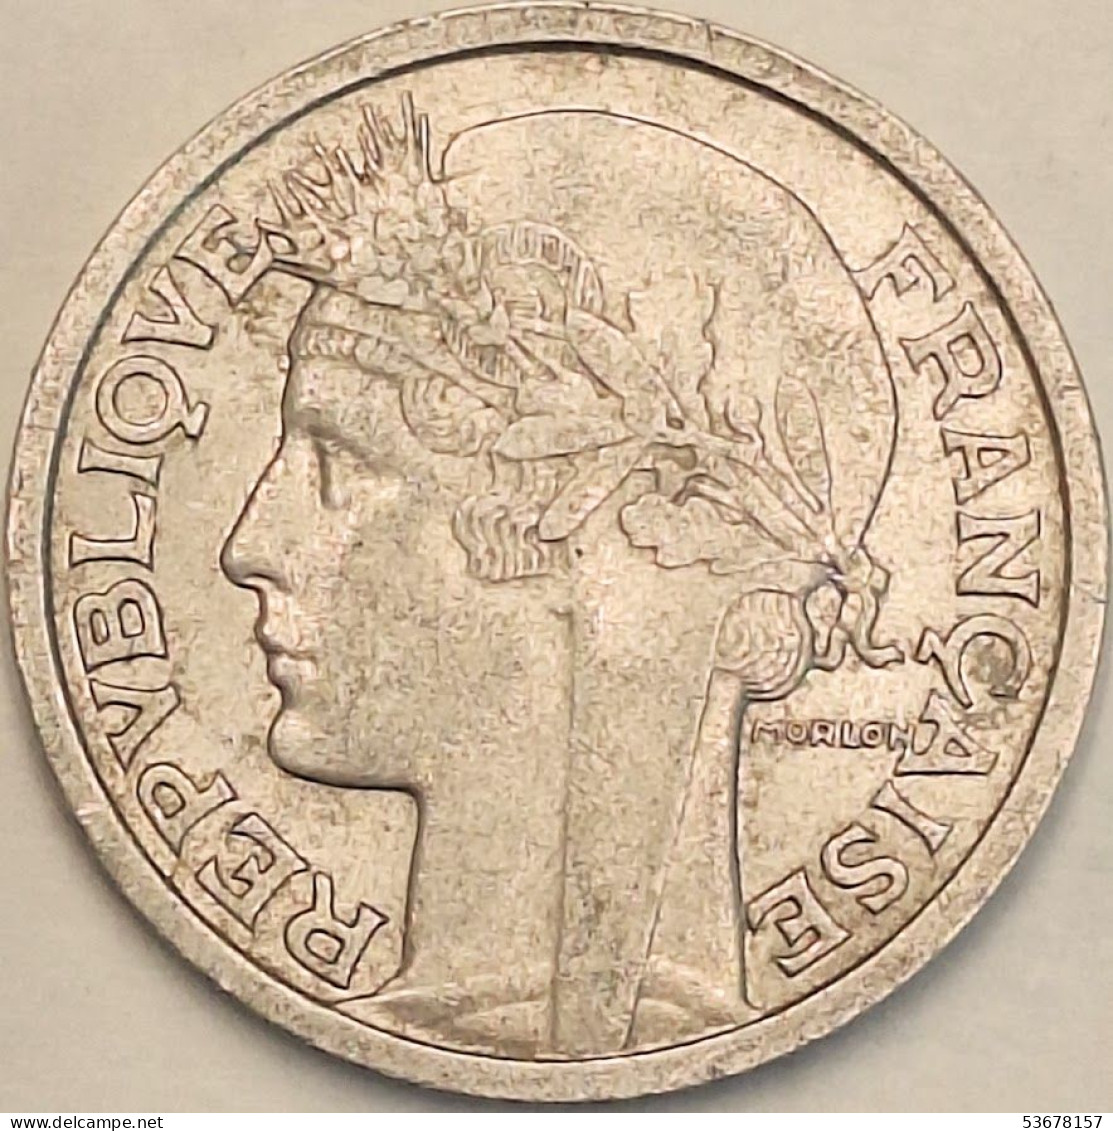 France - 2 Francs 1959, KM# 886a.1 (#4112) - 2 Francs